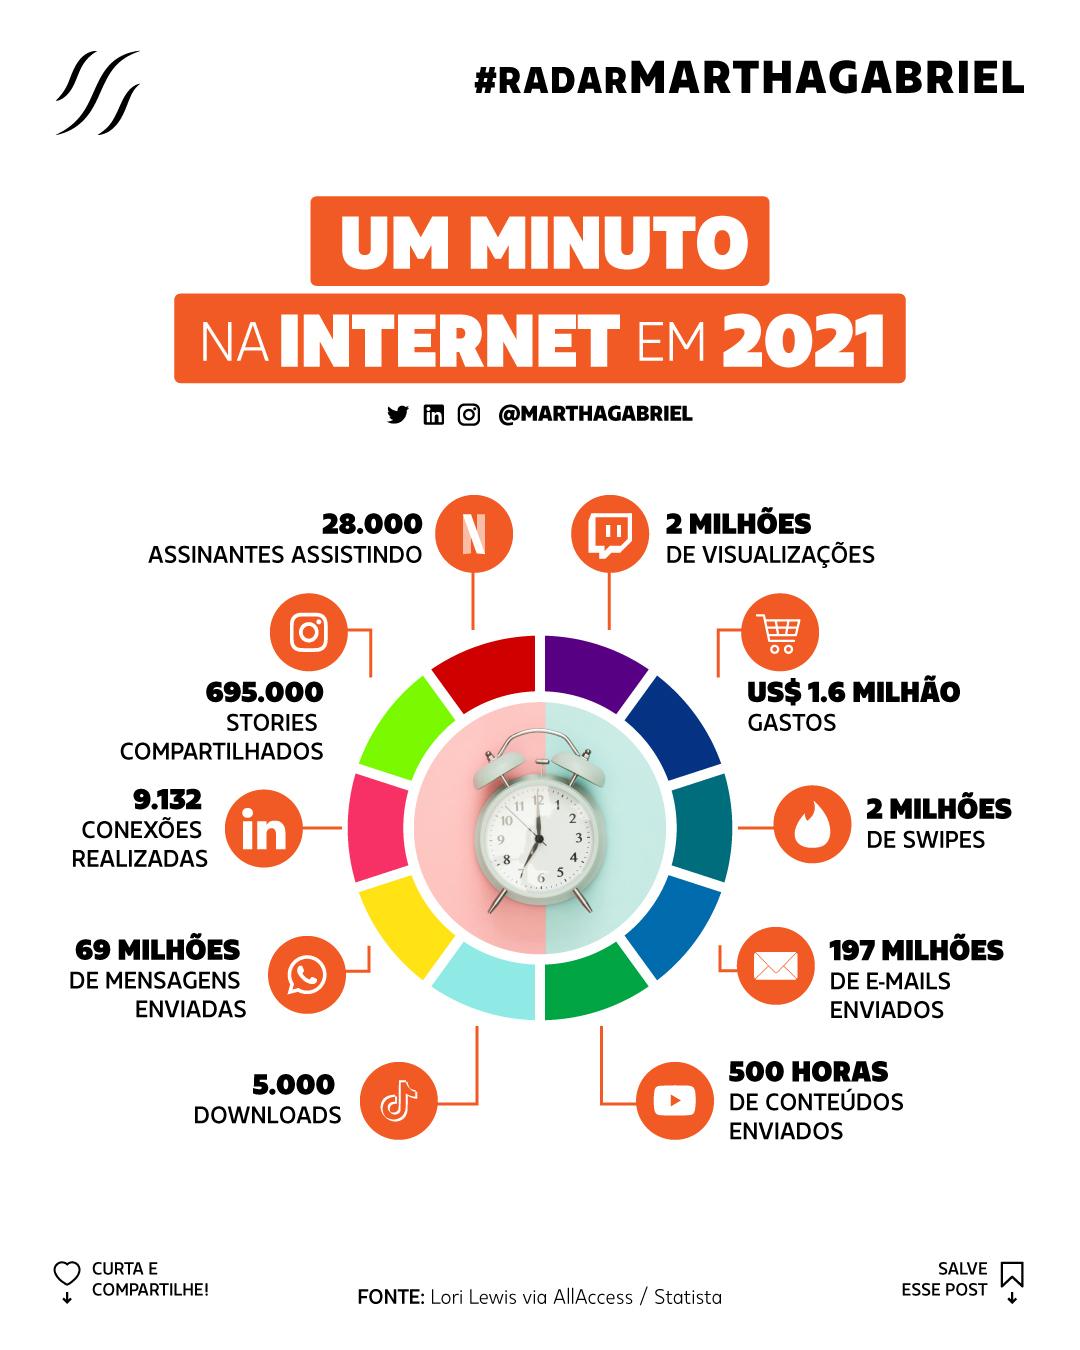 Um Minuto na Internet em 2021